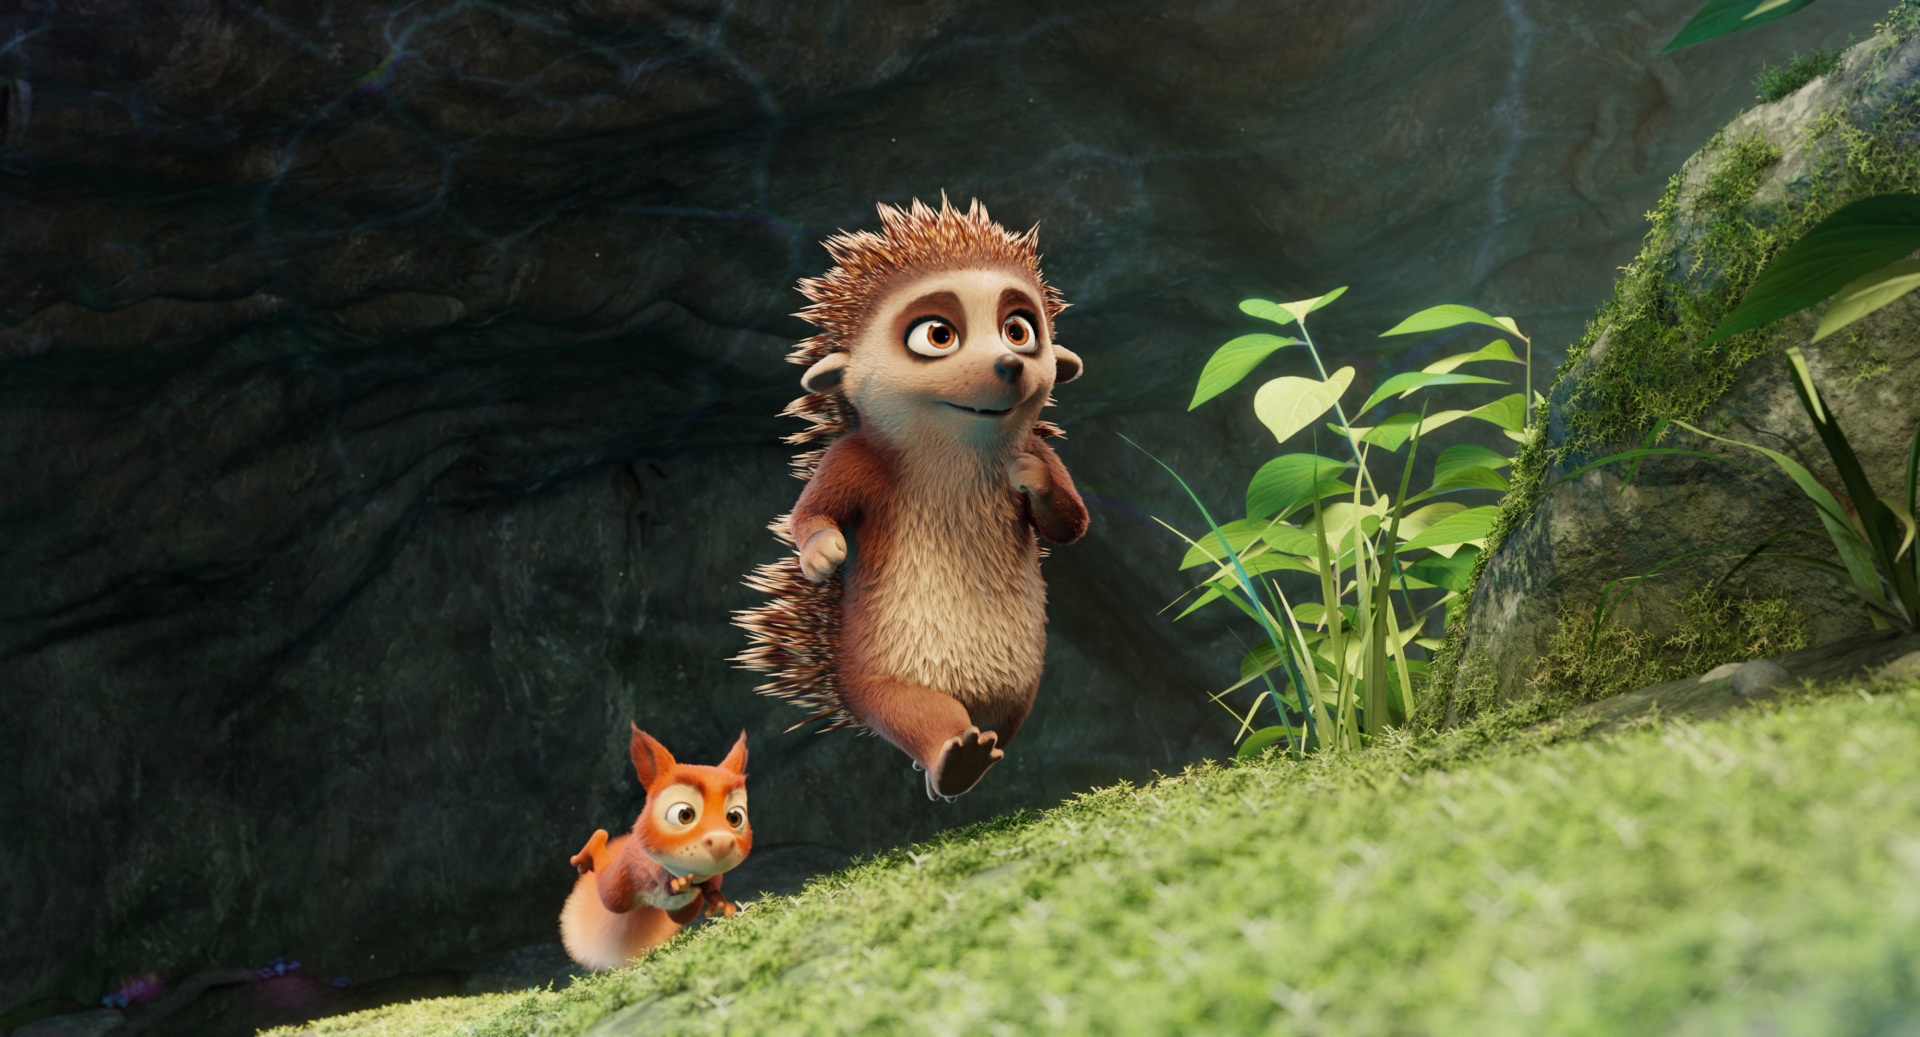 Animation von einem Igel und einem Eichhörnchen, die einen Berghang hochrennen.